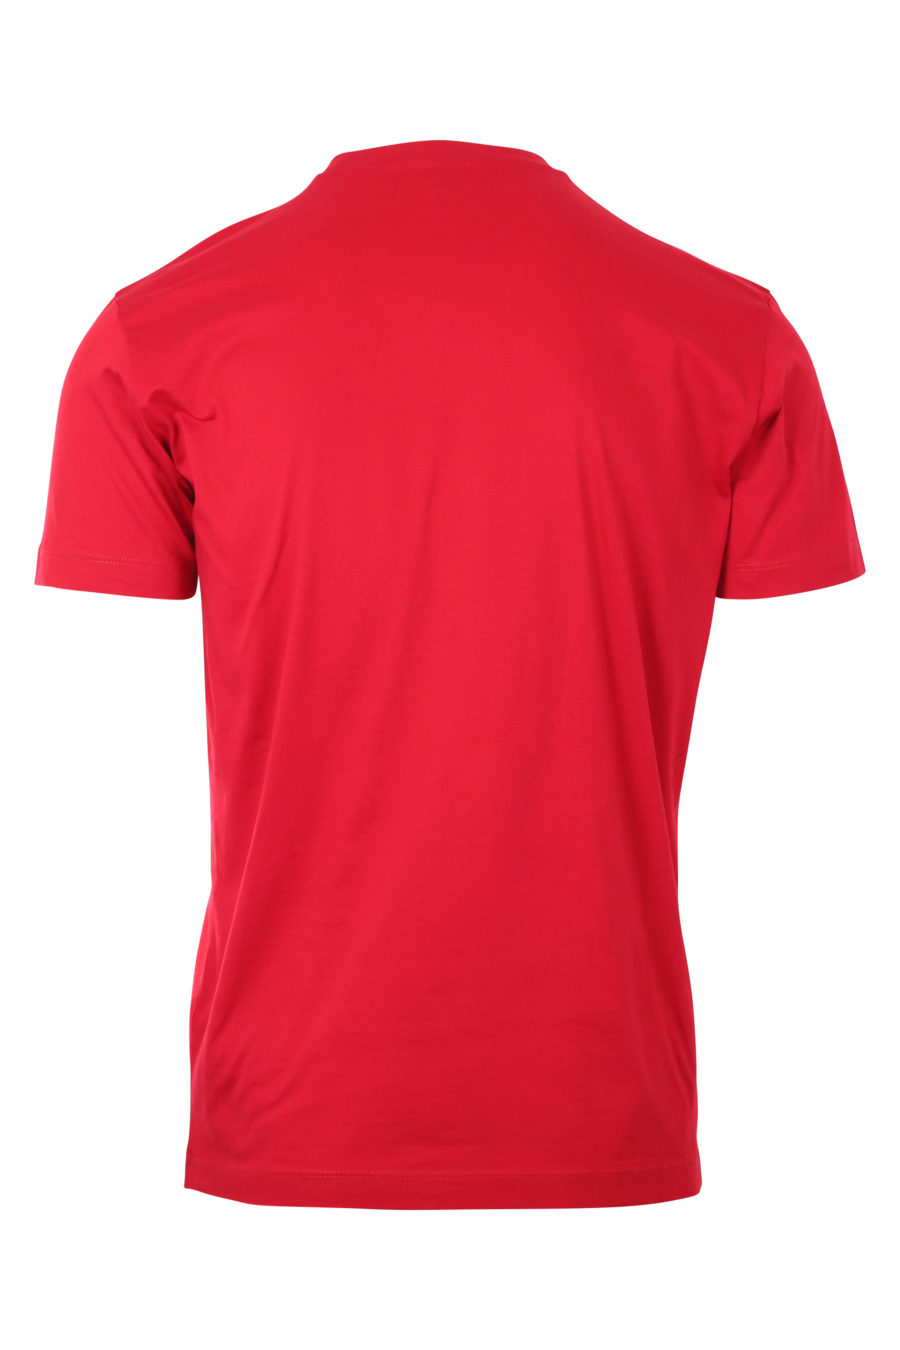 T-shirt vermelha escura com o logótipo "icon" - IMG 9746